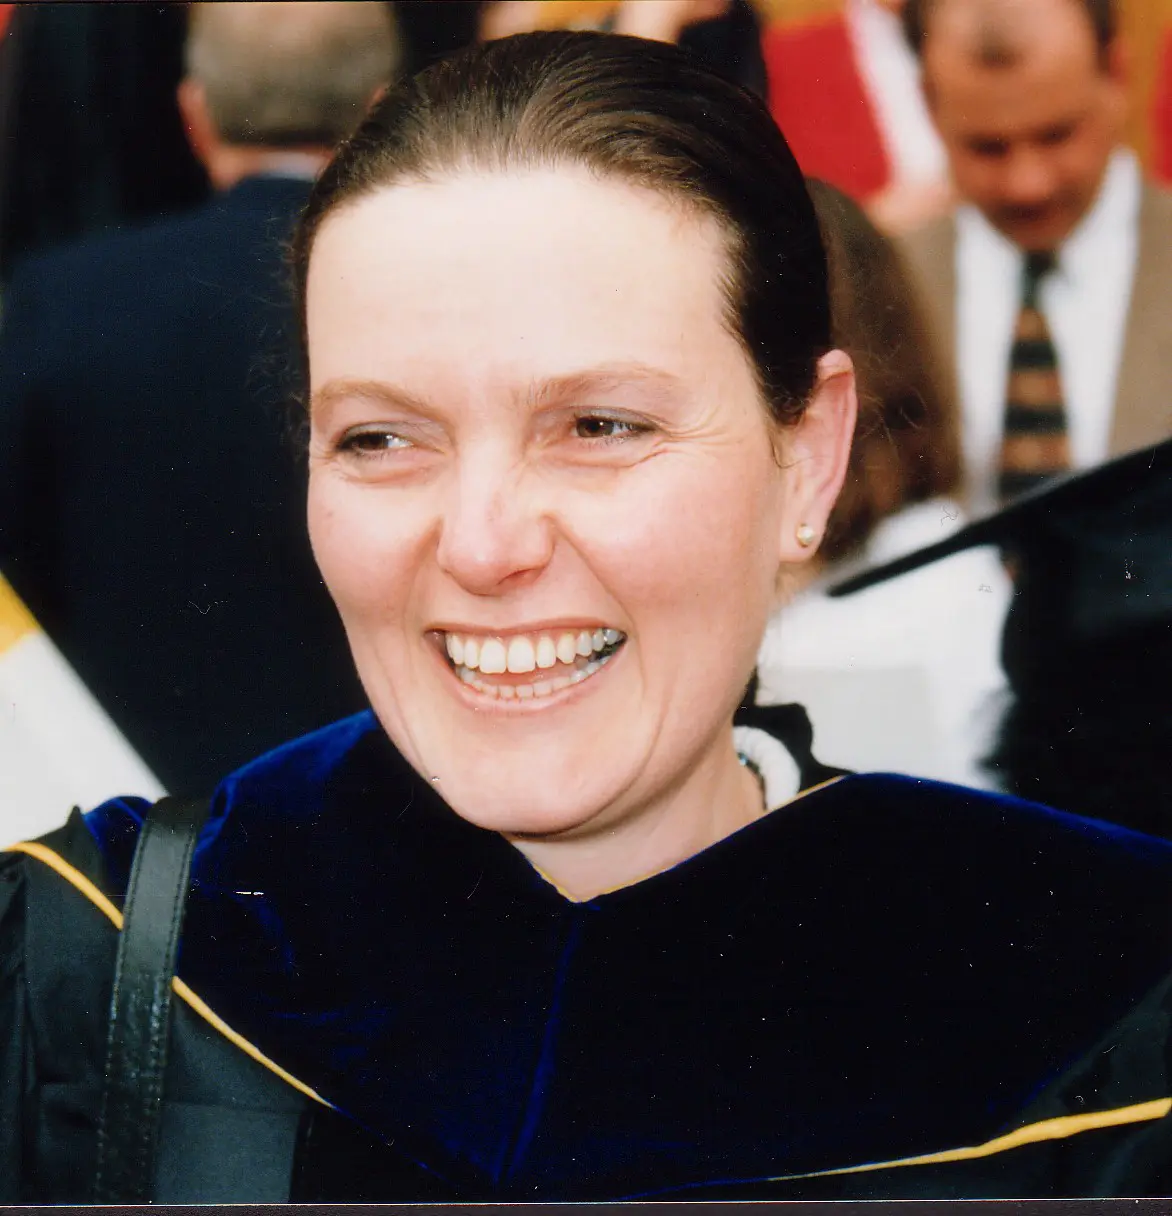 ד"ר יעקבה סצרדוטי, ראש החוג לספרות במכללת לוינסקי